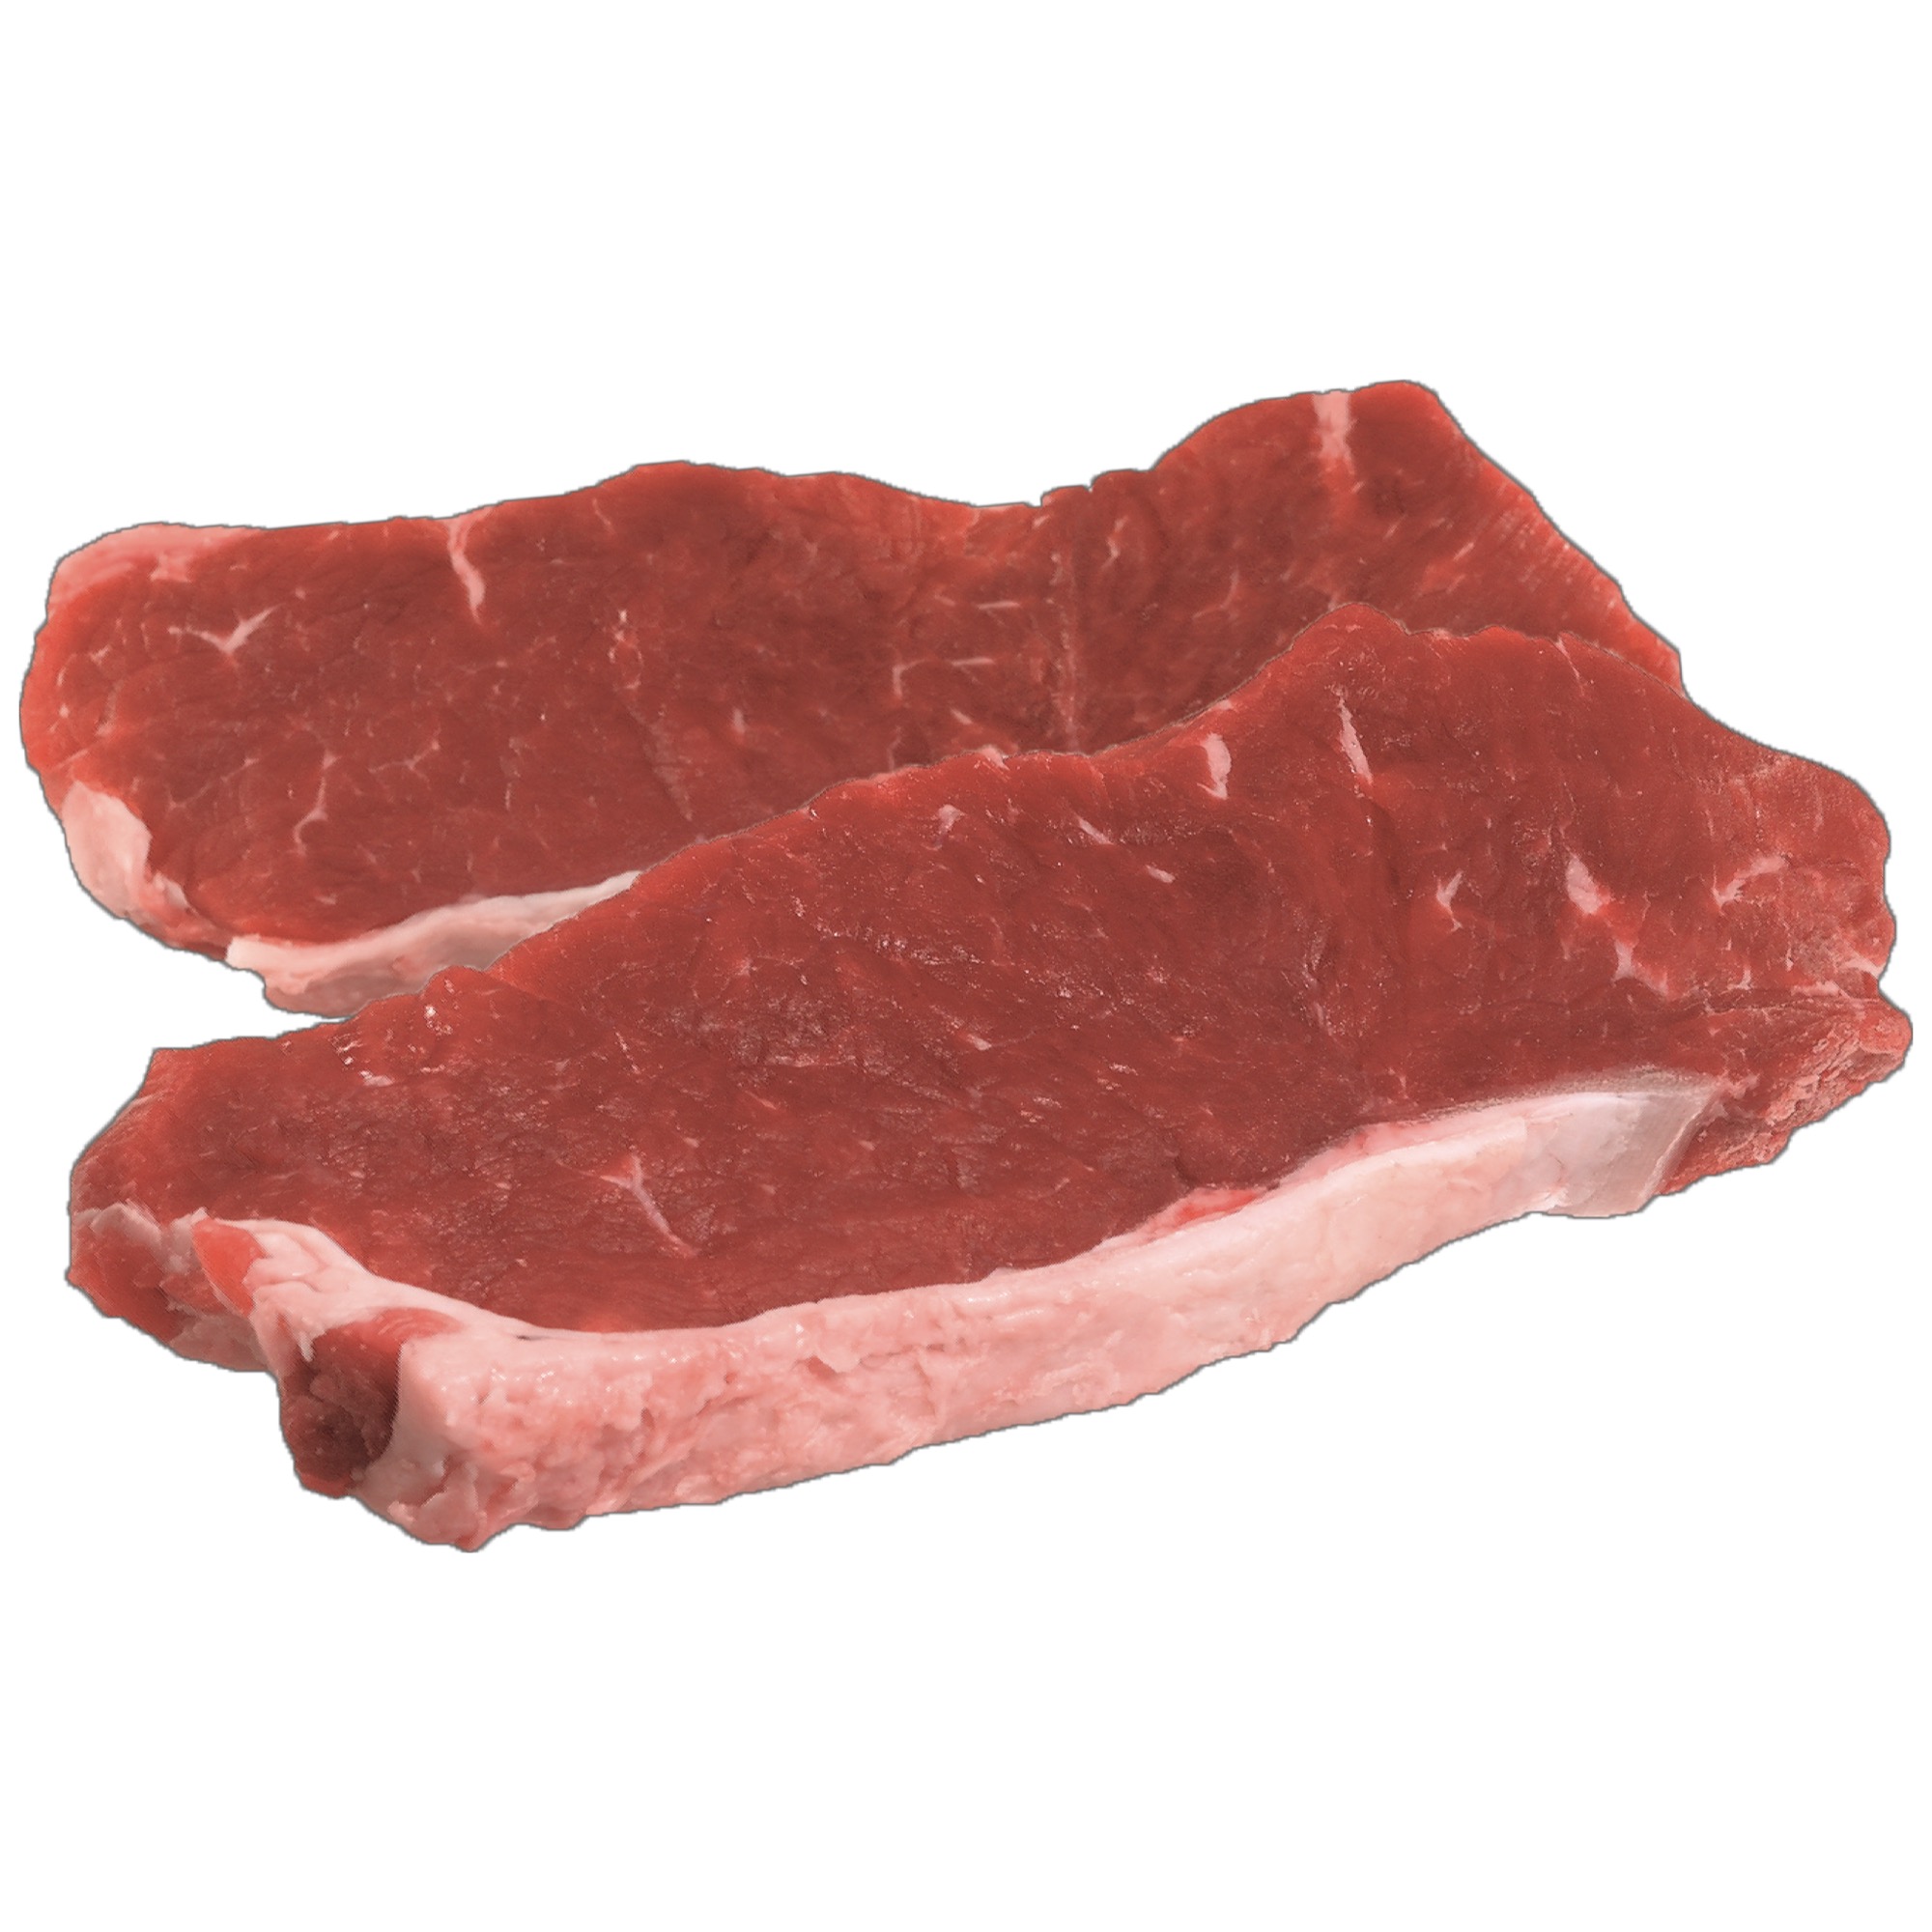 Hov. roštenka vysoká steak cca.350g